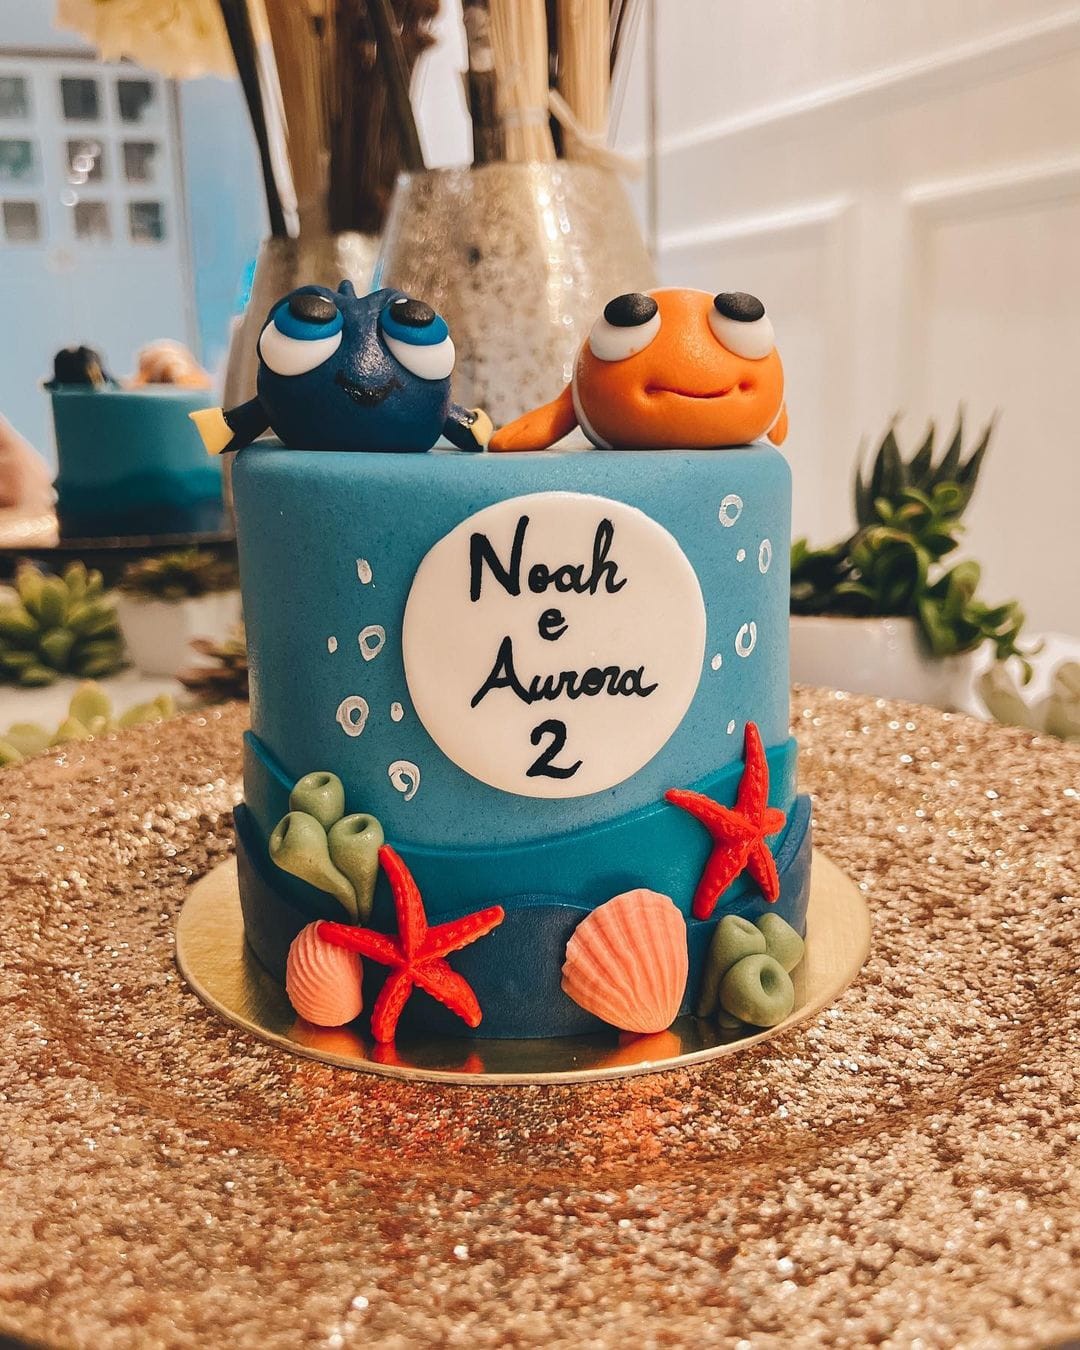 'Procurando Nemo' foi o tema escolhido para comemorar o mésversário (Foto: Reprodução/Instagram)